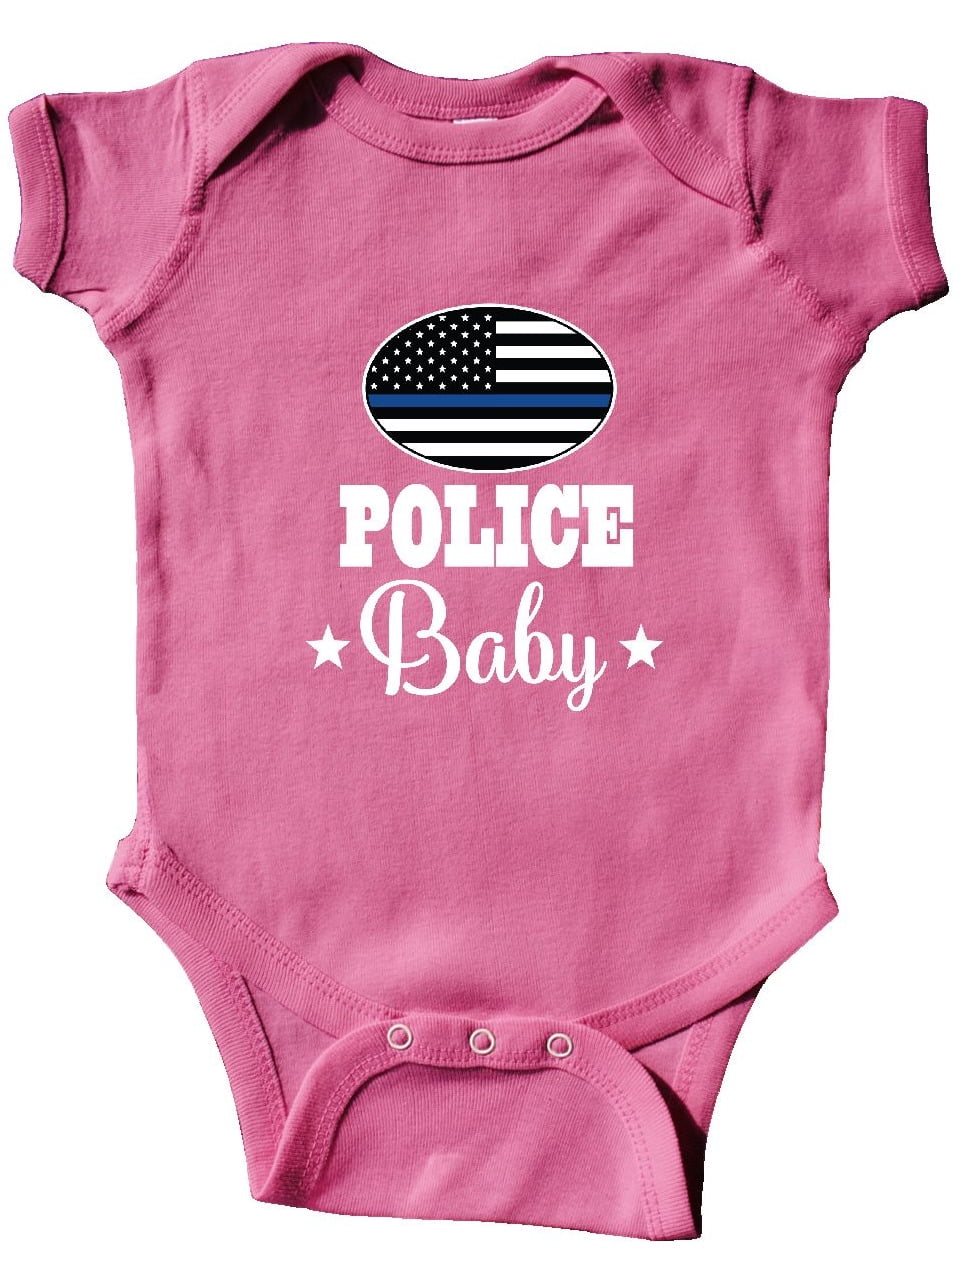 Nouveau Bébé Unisexe Babygrow 9-12 mois Toddler Boy Girl Sleepsuit momie ext Boutique 